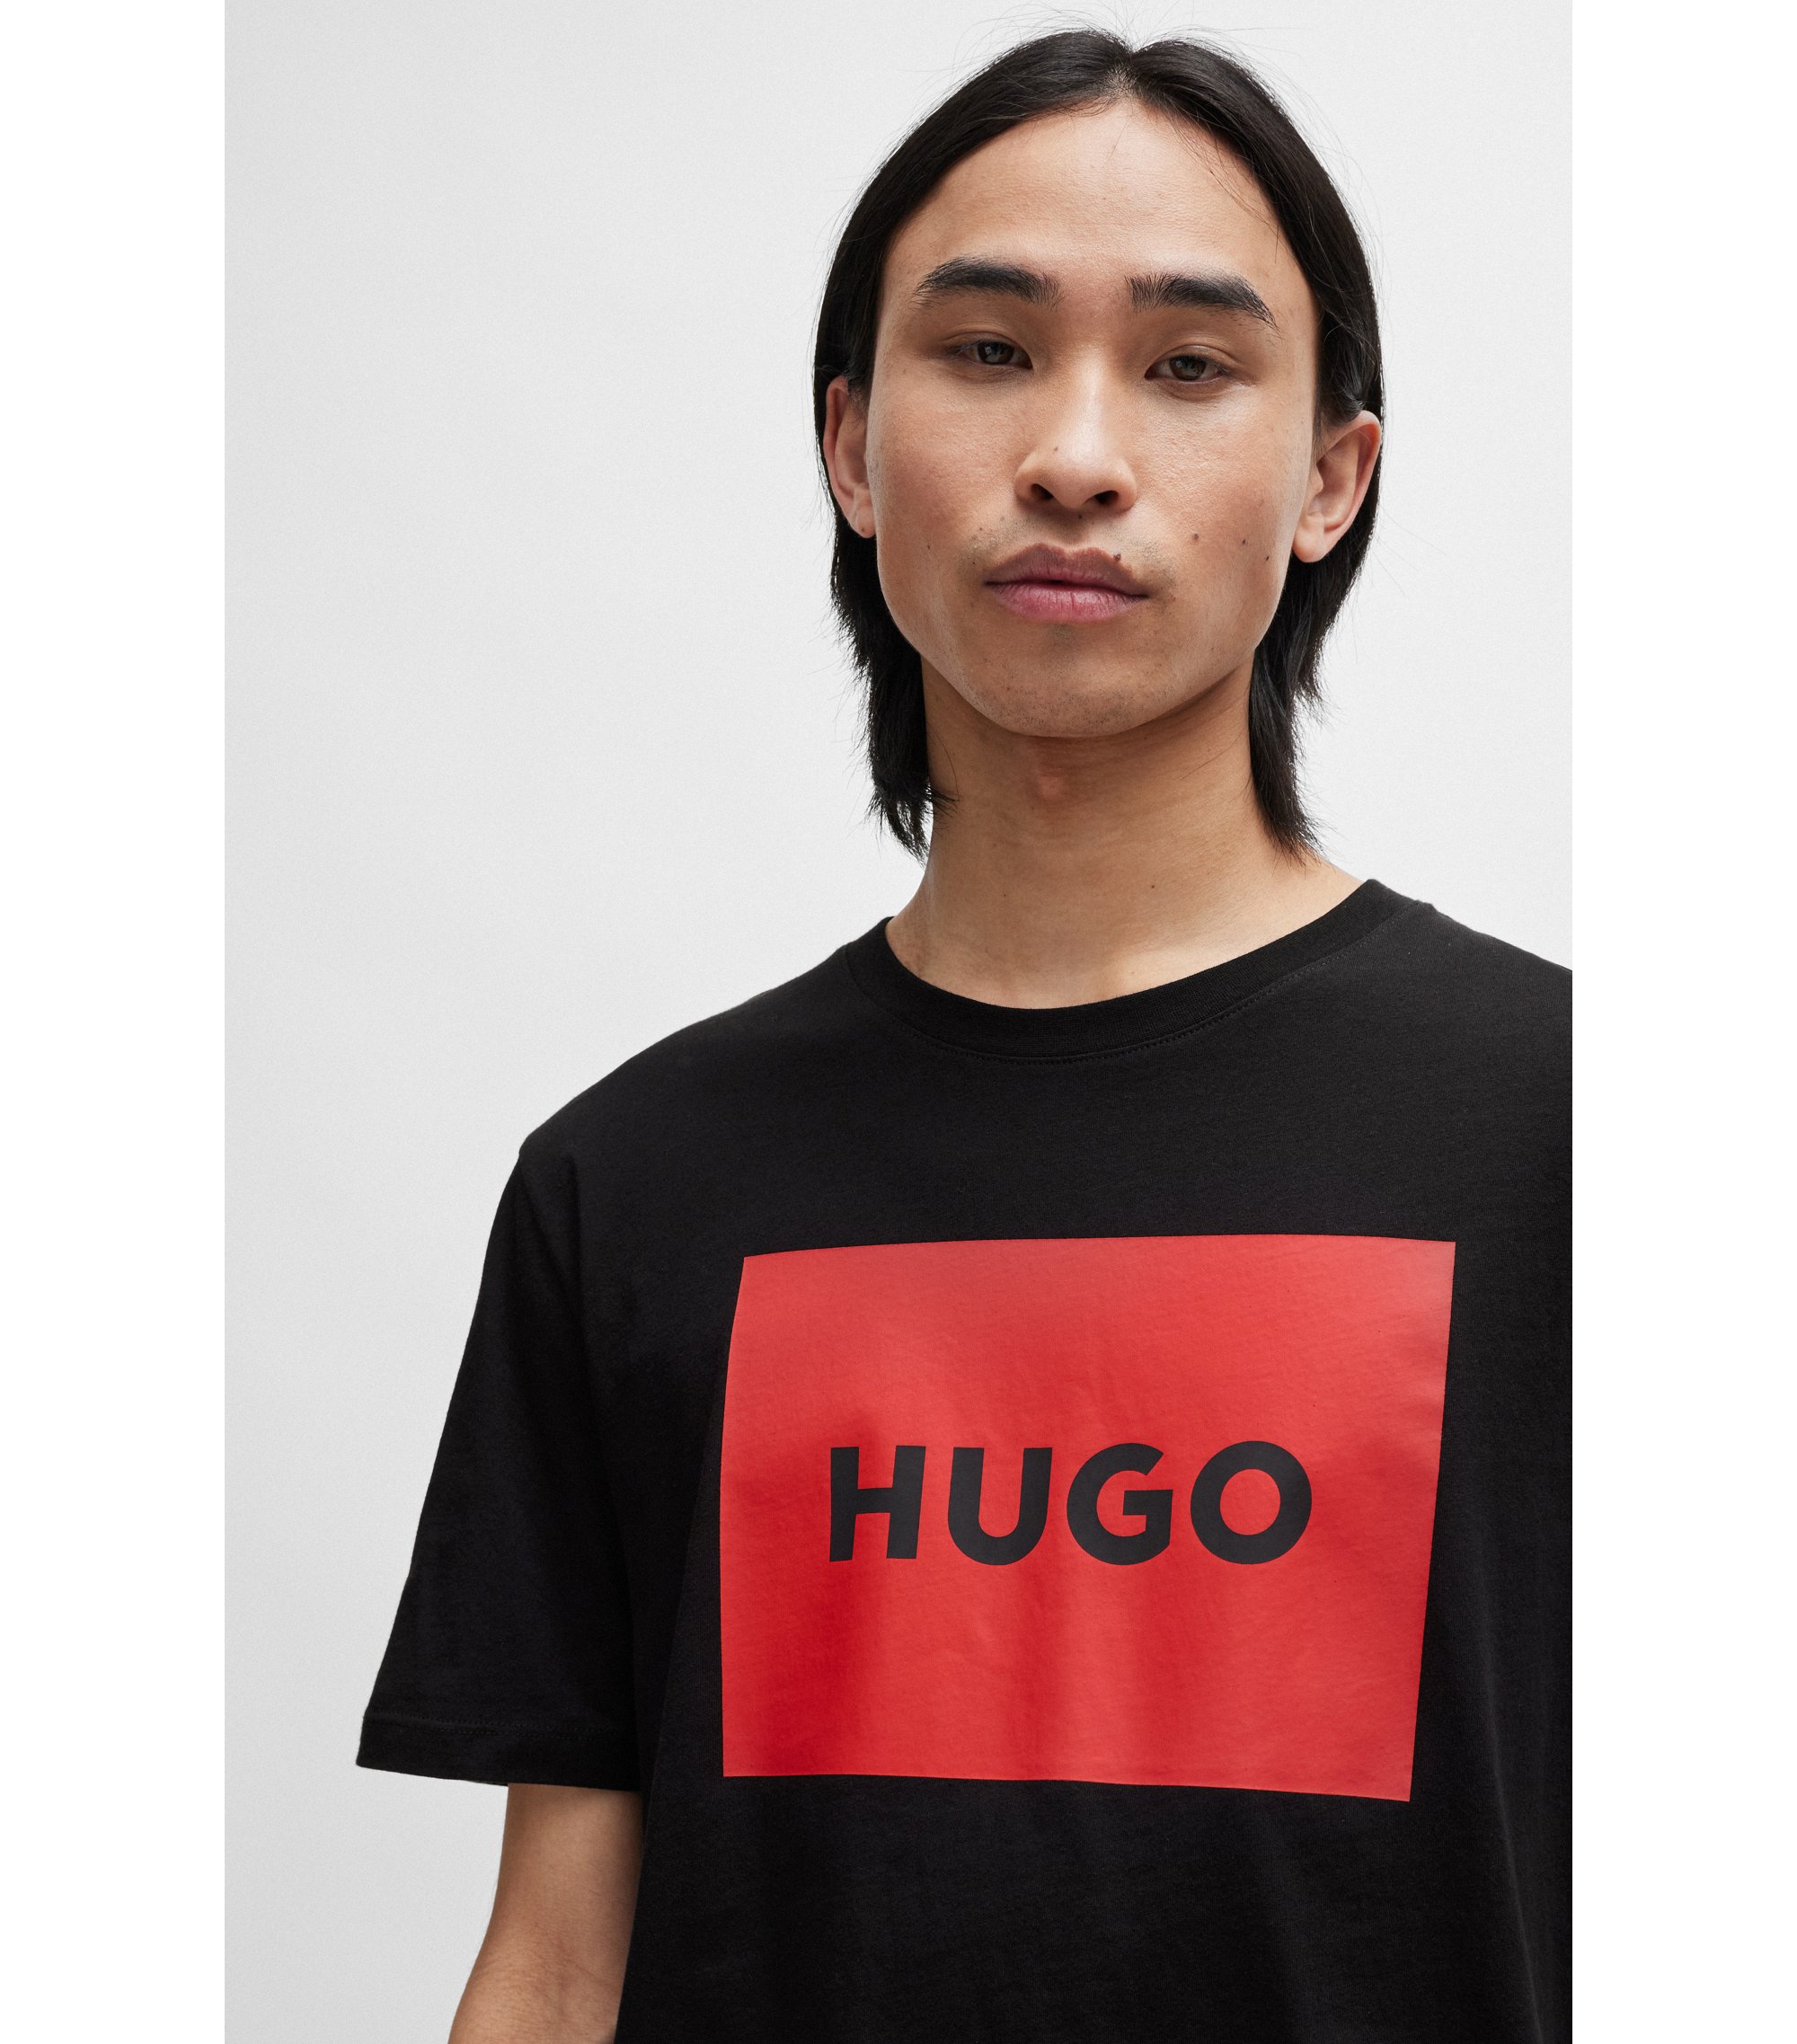 Hugo Boss Chest Logo T-Shirt Red